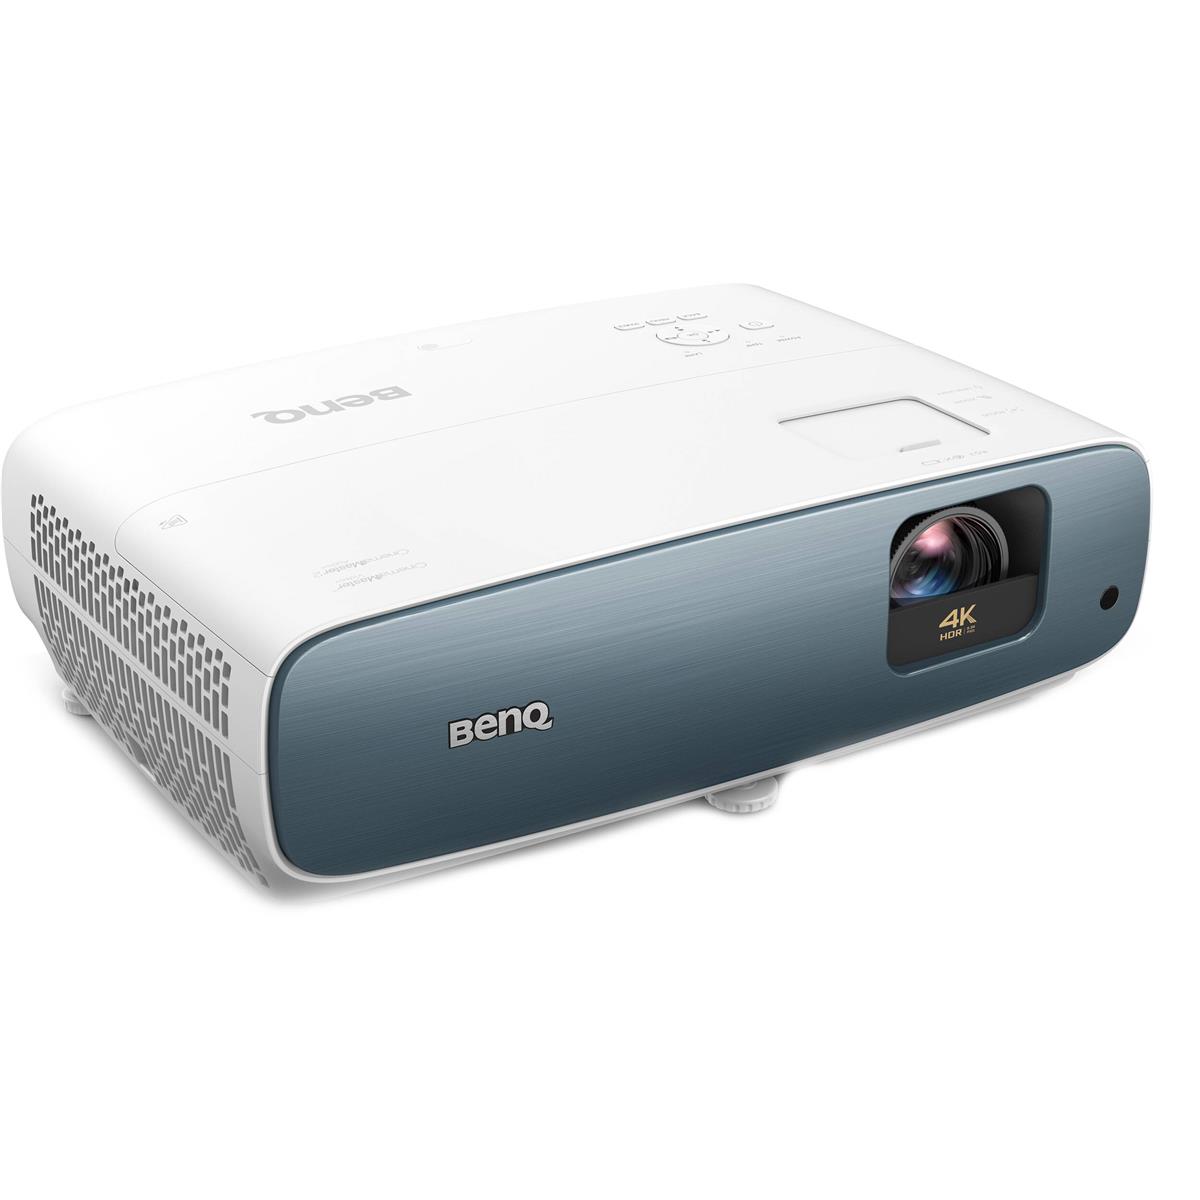 4K Ultra HD High Brightness HDR DLP Projector, 3000 Lumens - BenQ TK850I